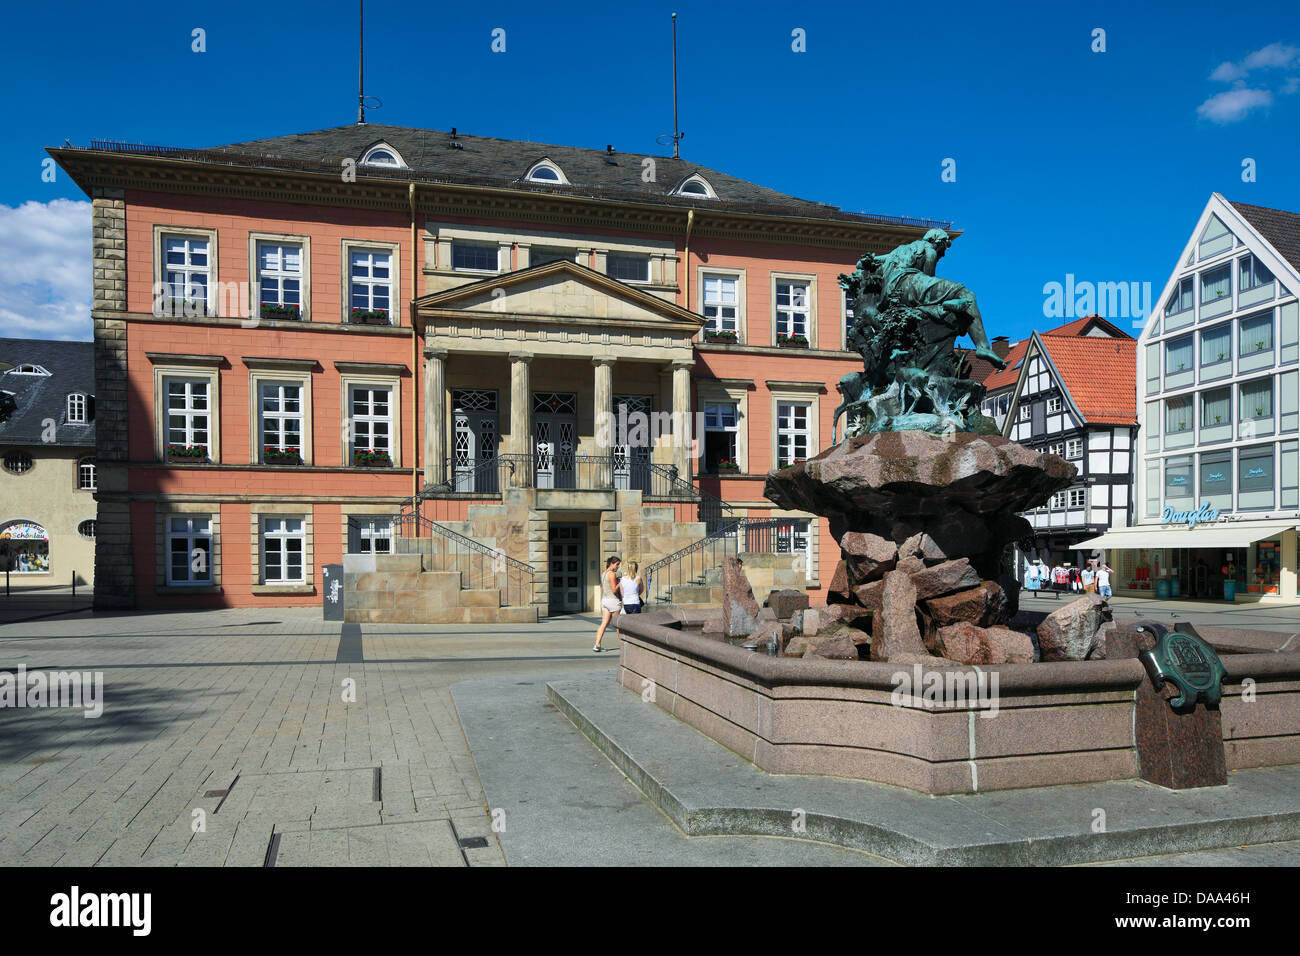 Rathaus Und Donopbrunnen von Rudolph Hoelbe am Marktplatz von Detmold, Teutoburger Wald, Nordrhein-Westfalen Stockfoto